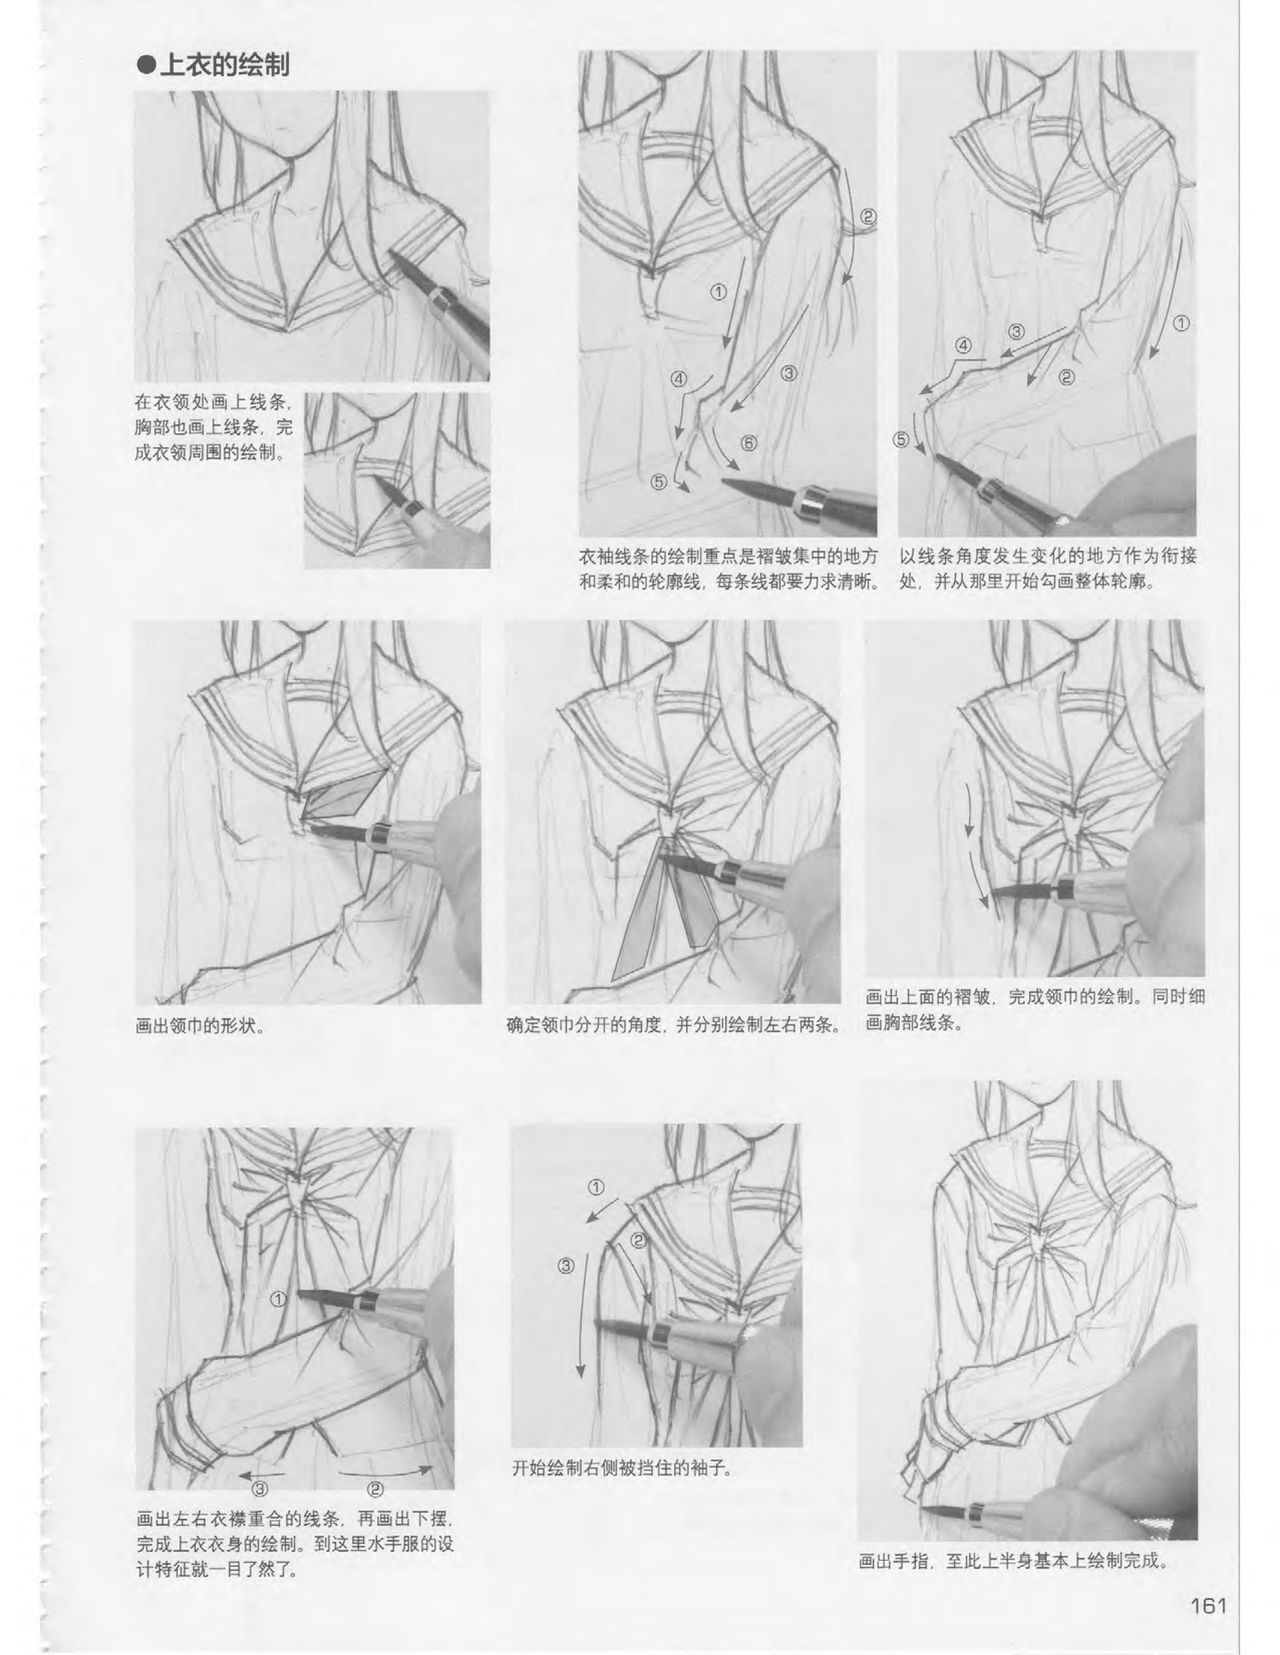 Japanese Manga Master Lecture 3: Lin Akira and Kakumaru Maru Talk About Glamorous Character Modeling 160